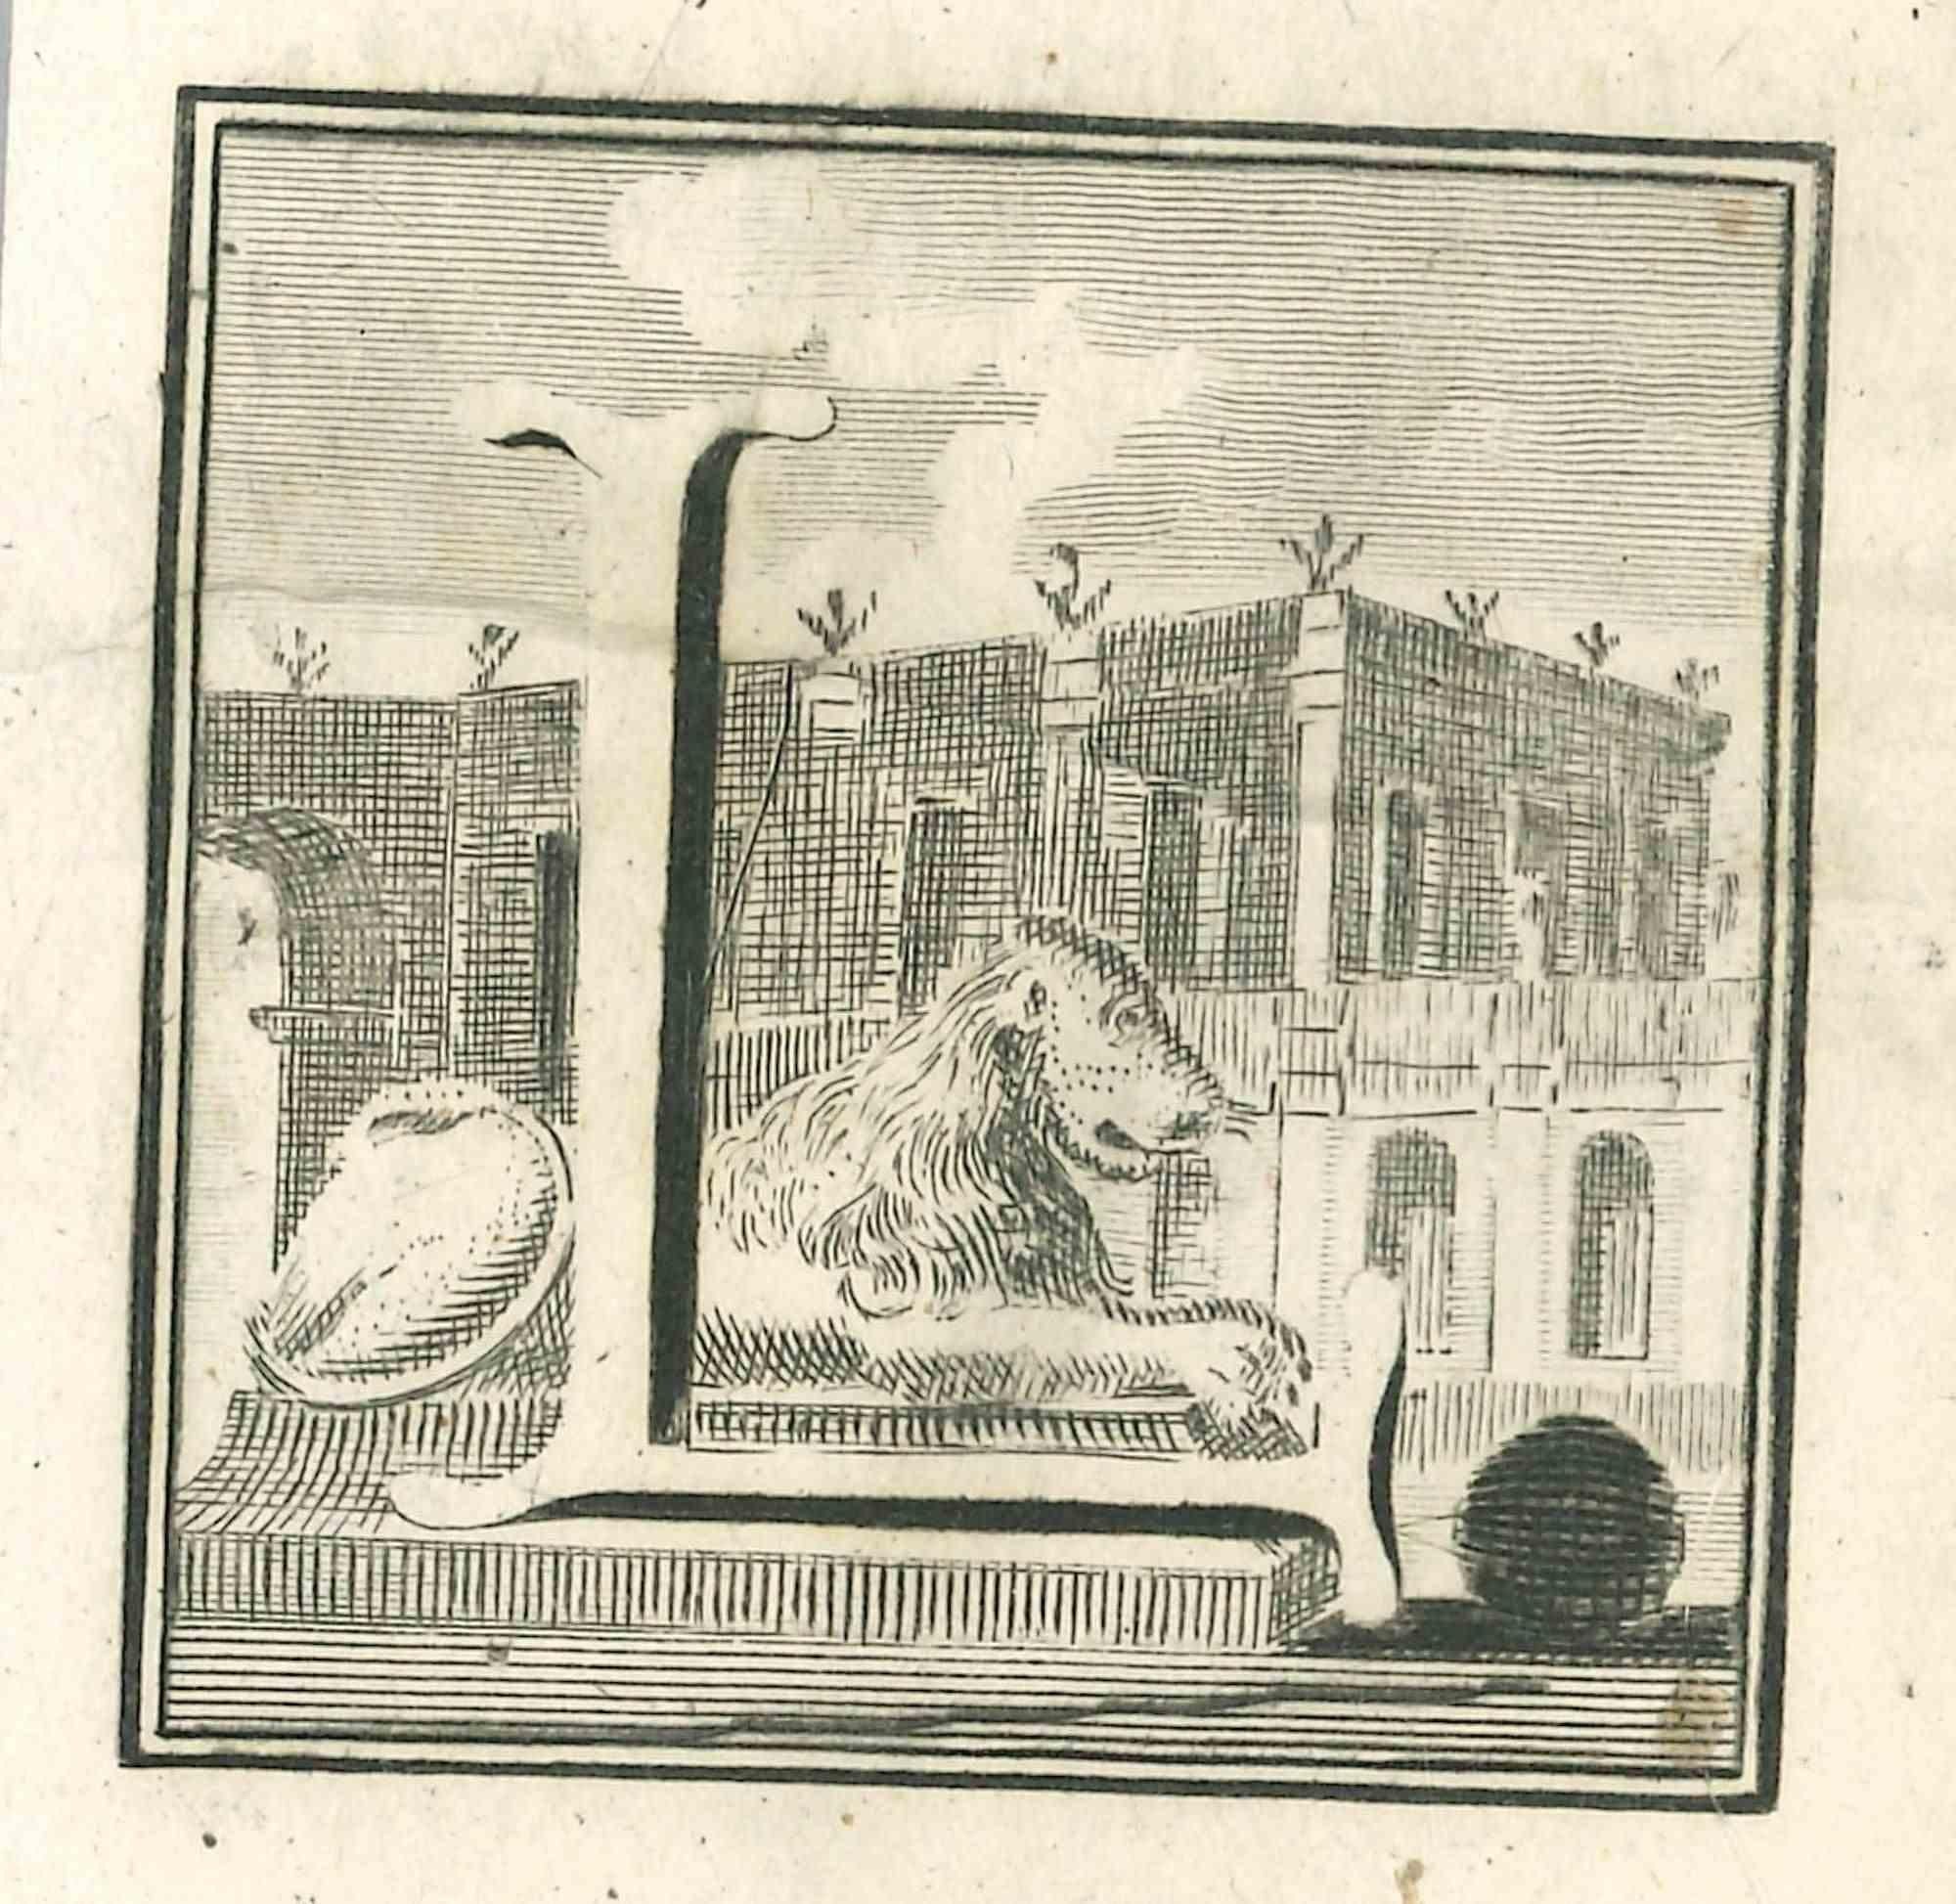 Lettre de l'alphabet L,  de la série "Antiquités d'Herculanum", est une gravure sur papier réalisée par Luigi Vanvitelli au 18ème siècle.

Bon état avec de légers plis.

La gravure appartient à la suite d'estampes "Antiquités d'Herculanum exposées"